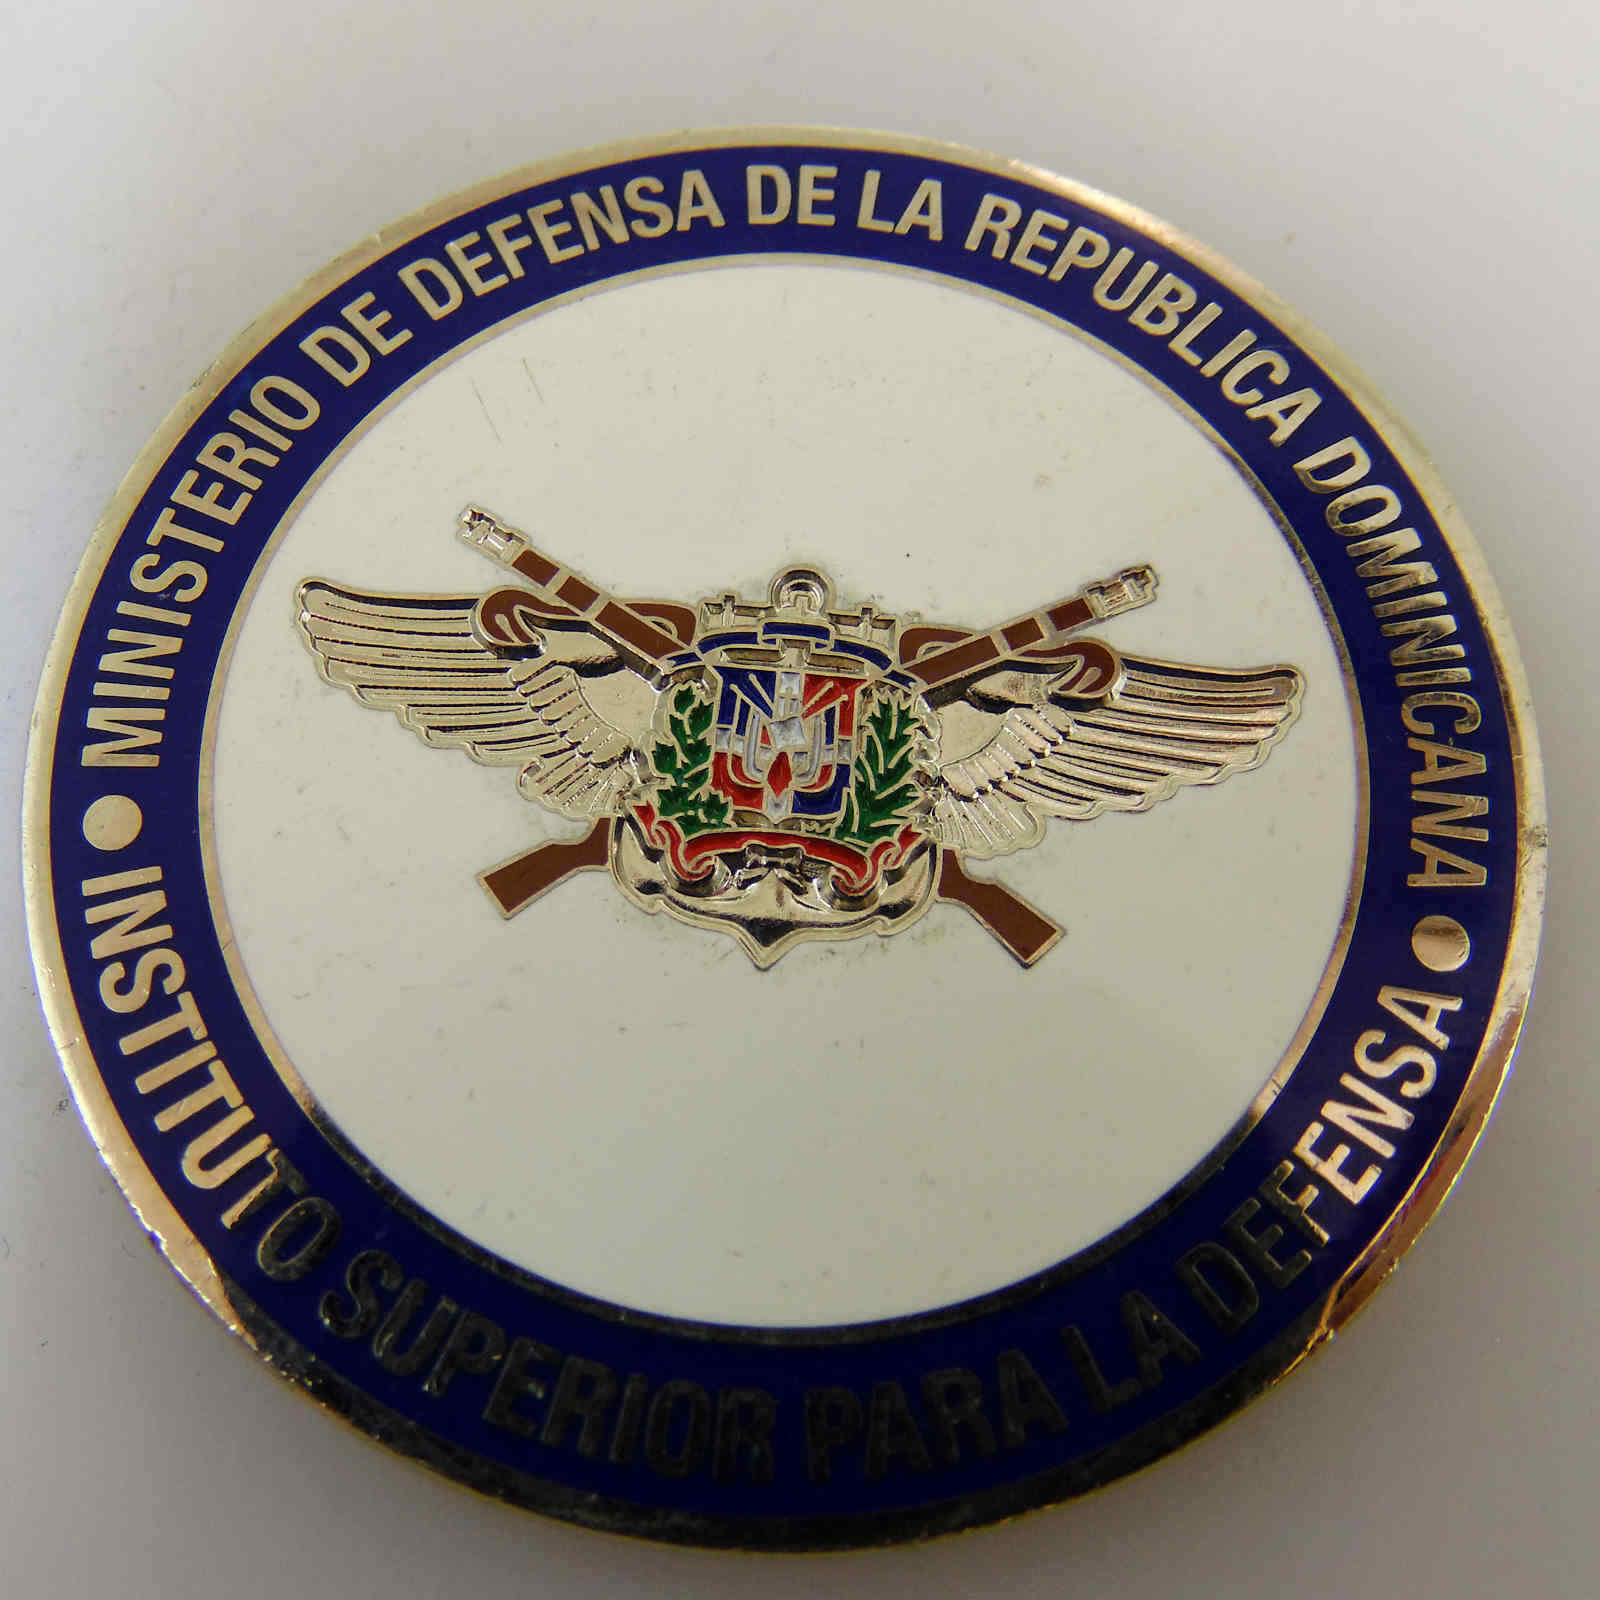 MINISTERIO DE DEFENSA DE LA REPUBLICA DOMINICANA CHALLENGE COIN